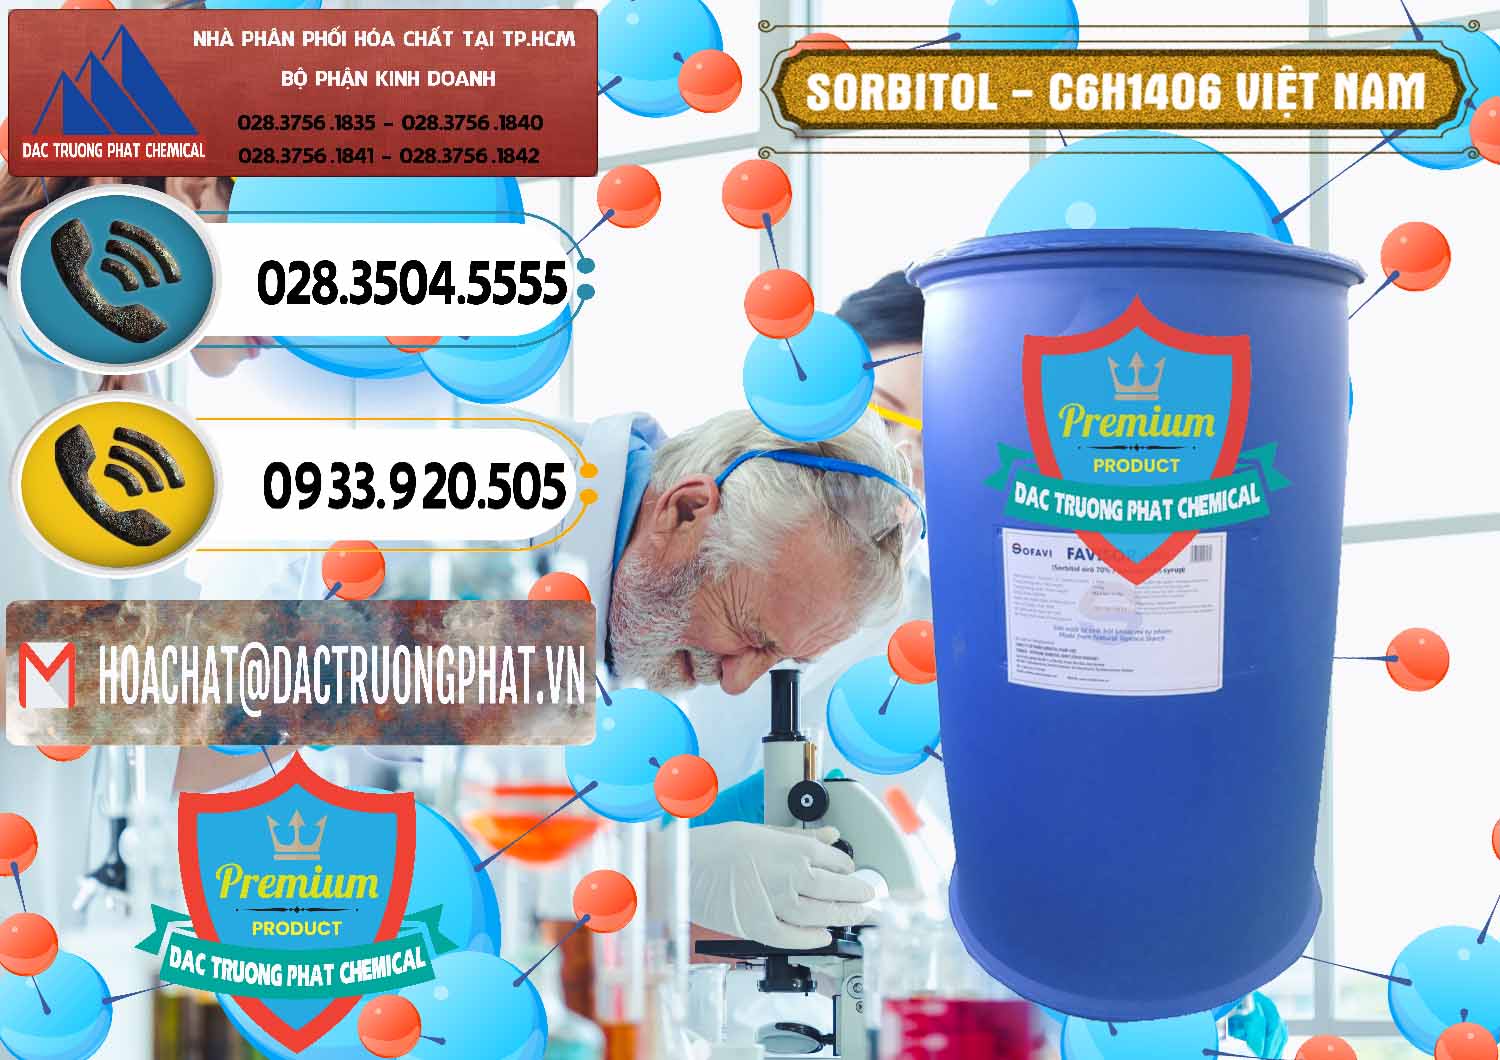 Chuyên cung cấp ( bán ) Sorbitol - C6H14O6 Lỏng 70% Food Grade Việt Nam - 0438 - Chuyên cung ứng - bán hóa chất tại TP.HCM - hoachatdetnhuom.vn